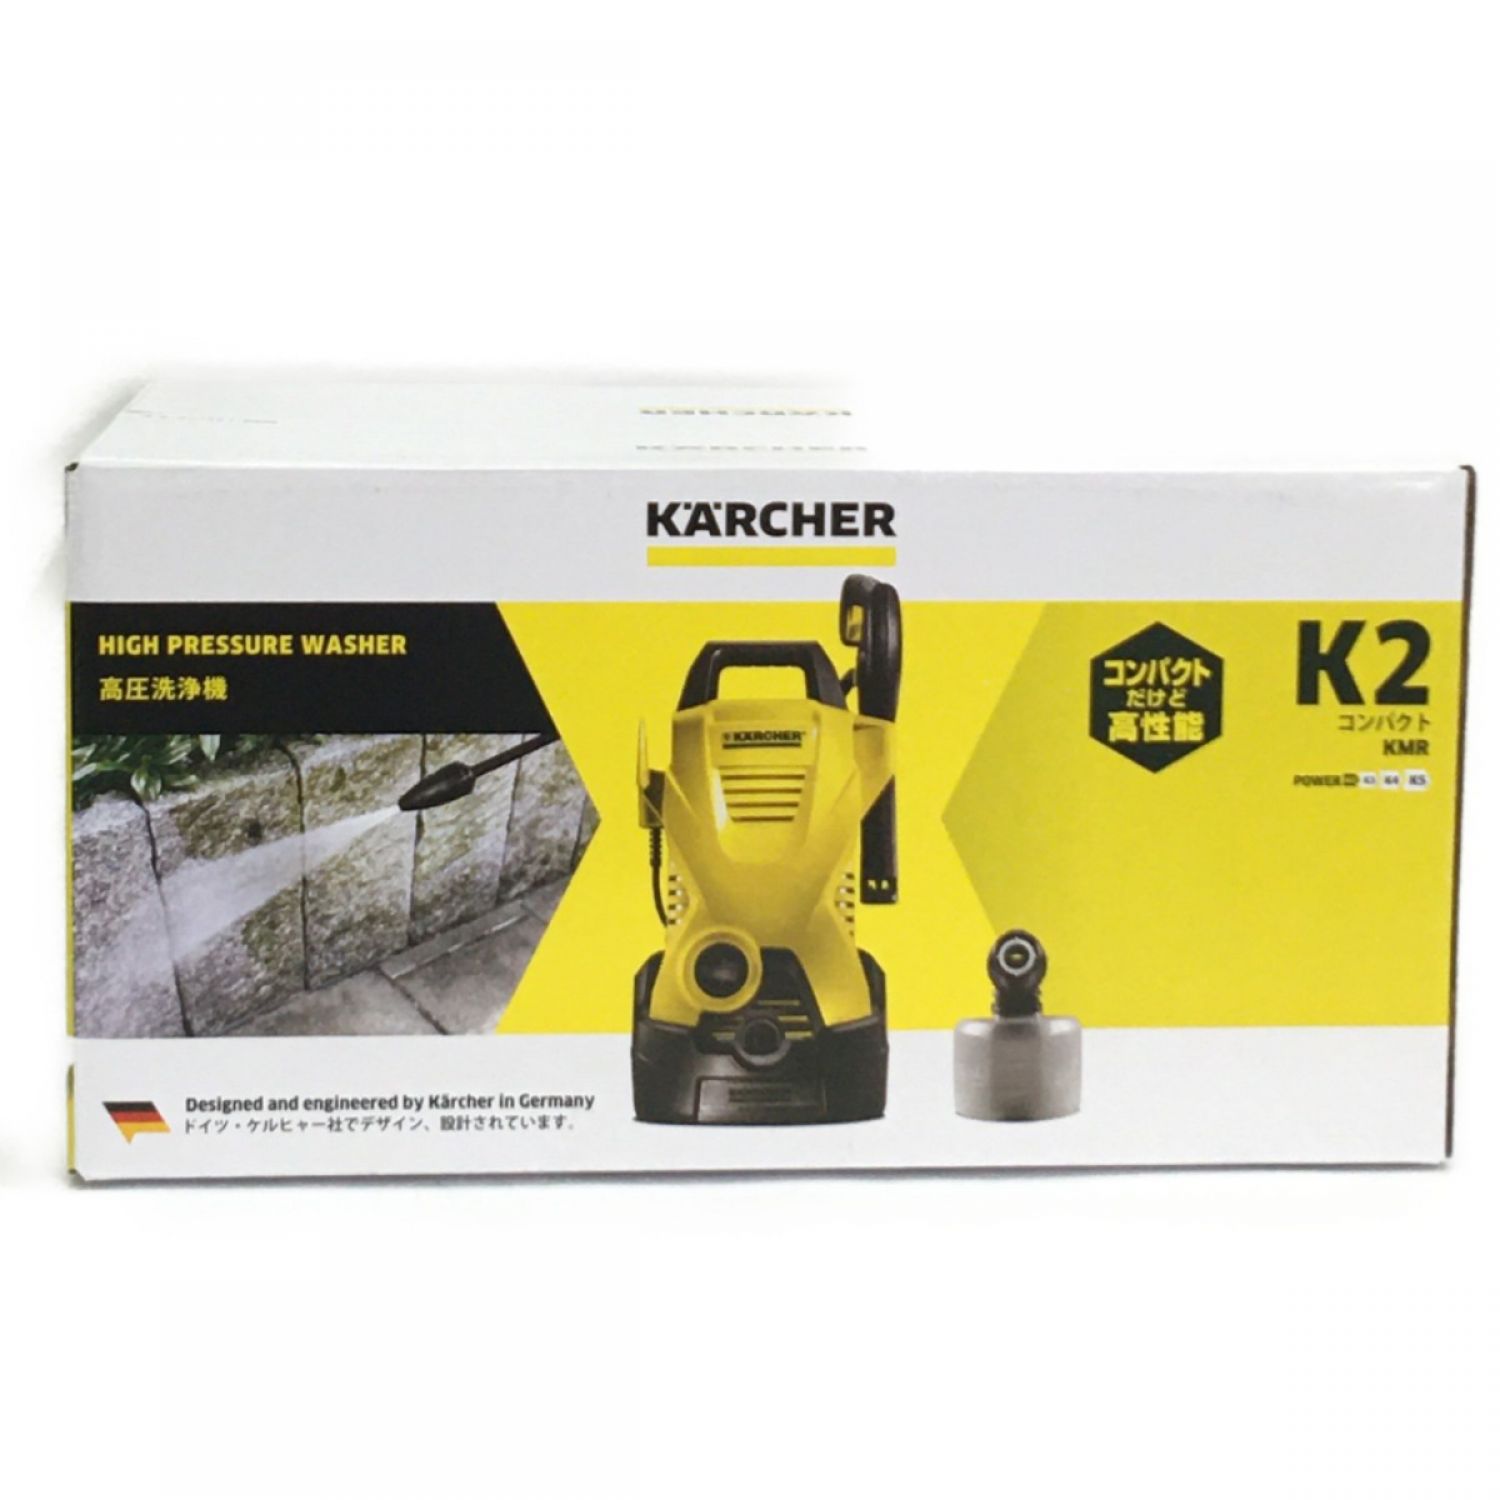 ケルヒャー 高圧洗浄機 K2  コンパクト  KMR